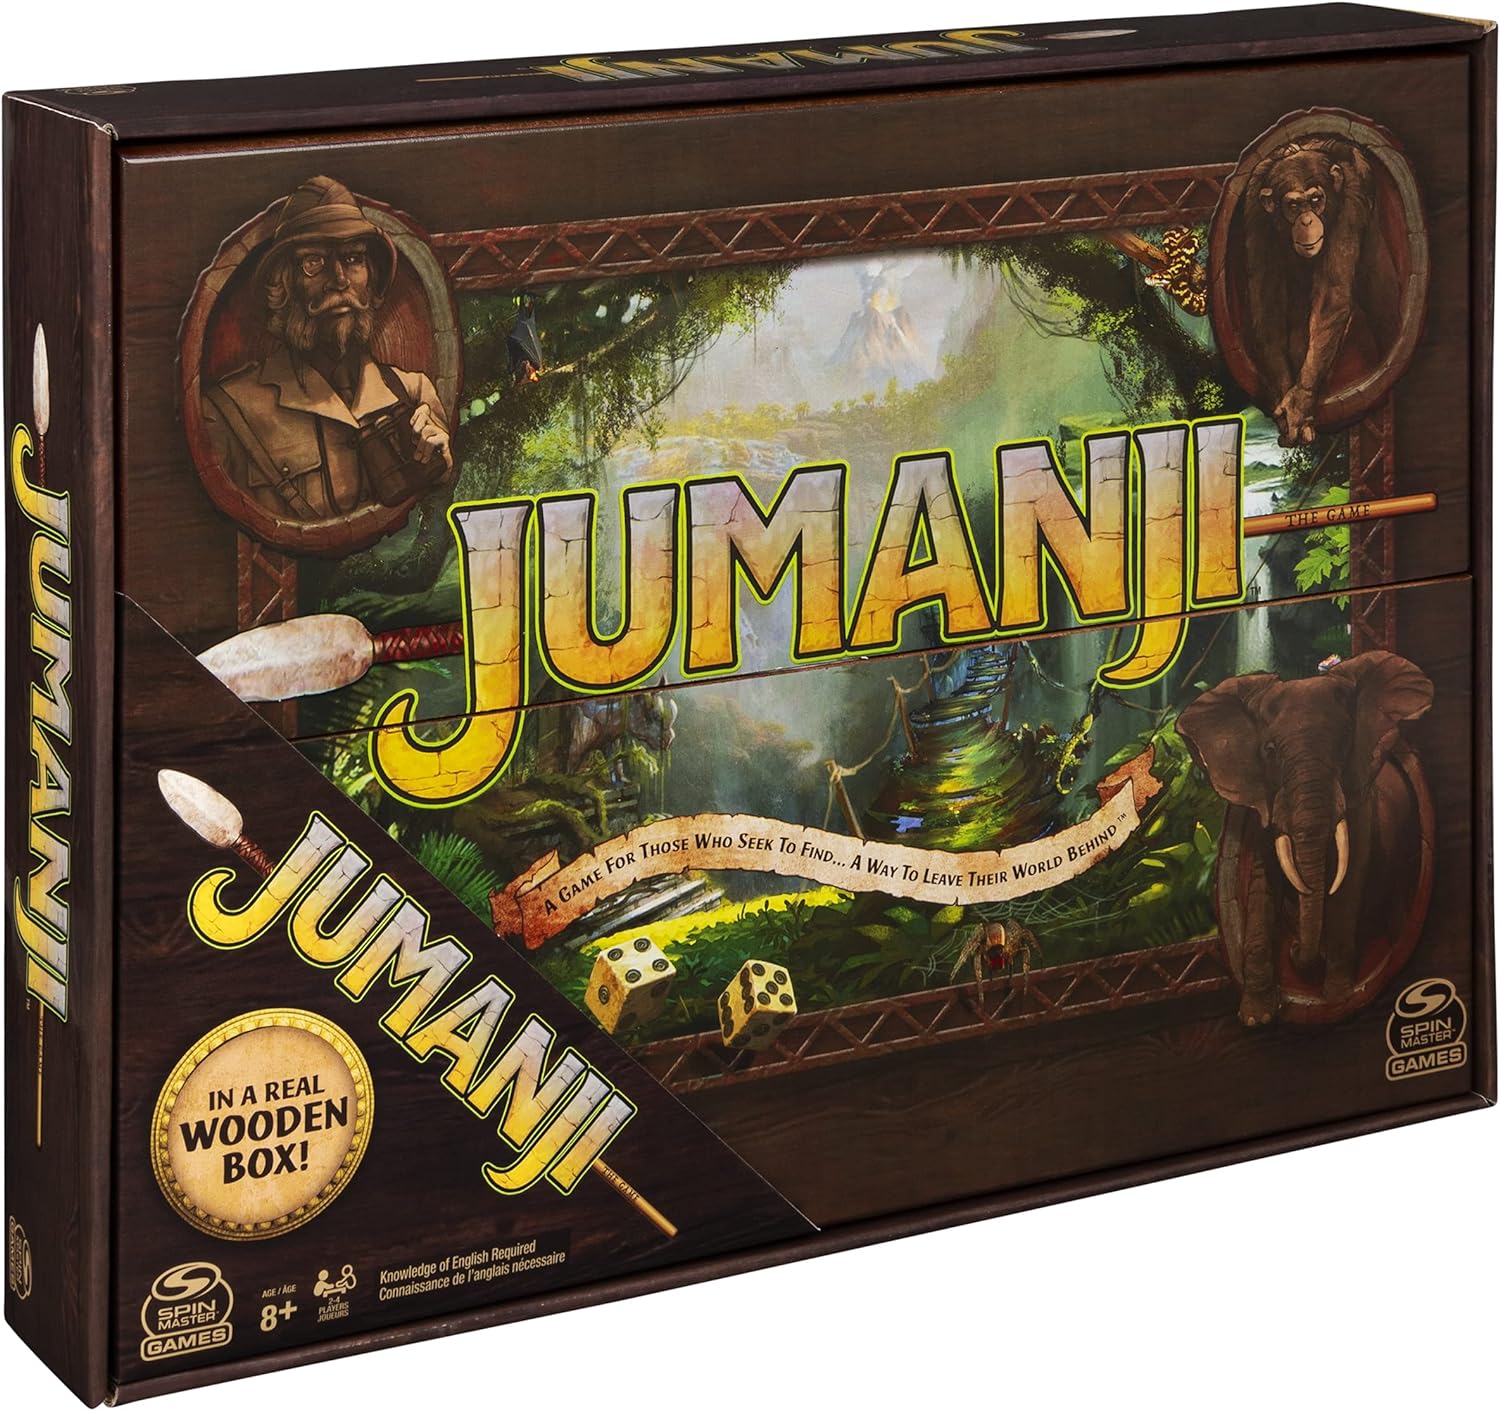 لعبة سبين ماستر جيمز جومانجي إصدار صندوق خشبي حقيقي من لعبة المغامرة الكلاسيكية